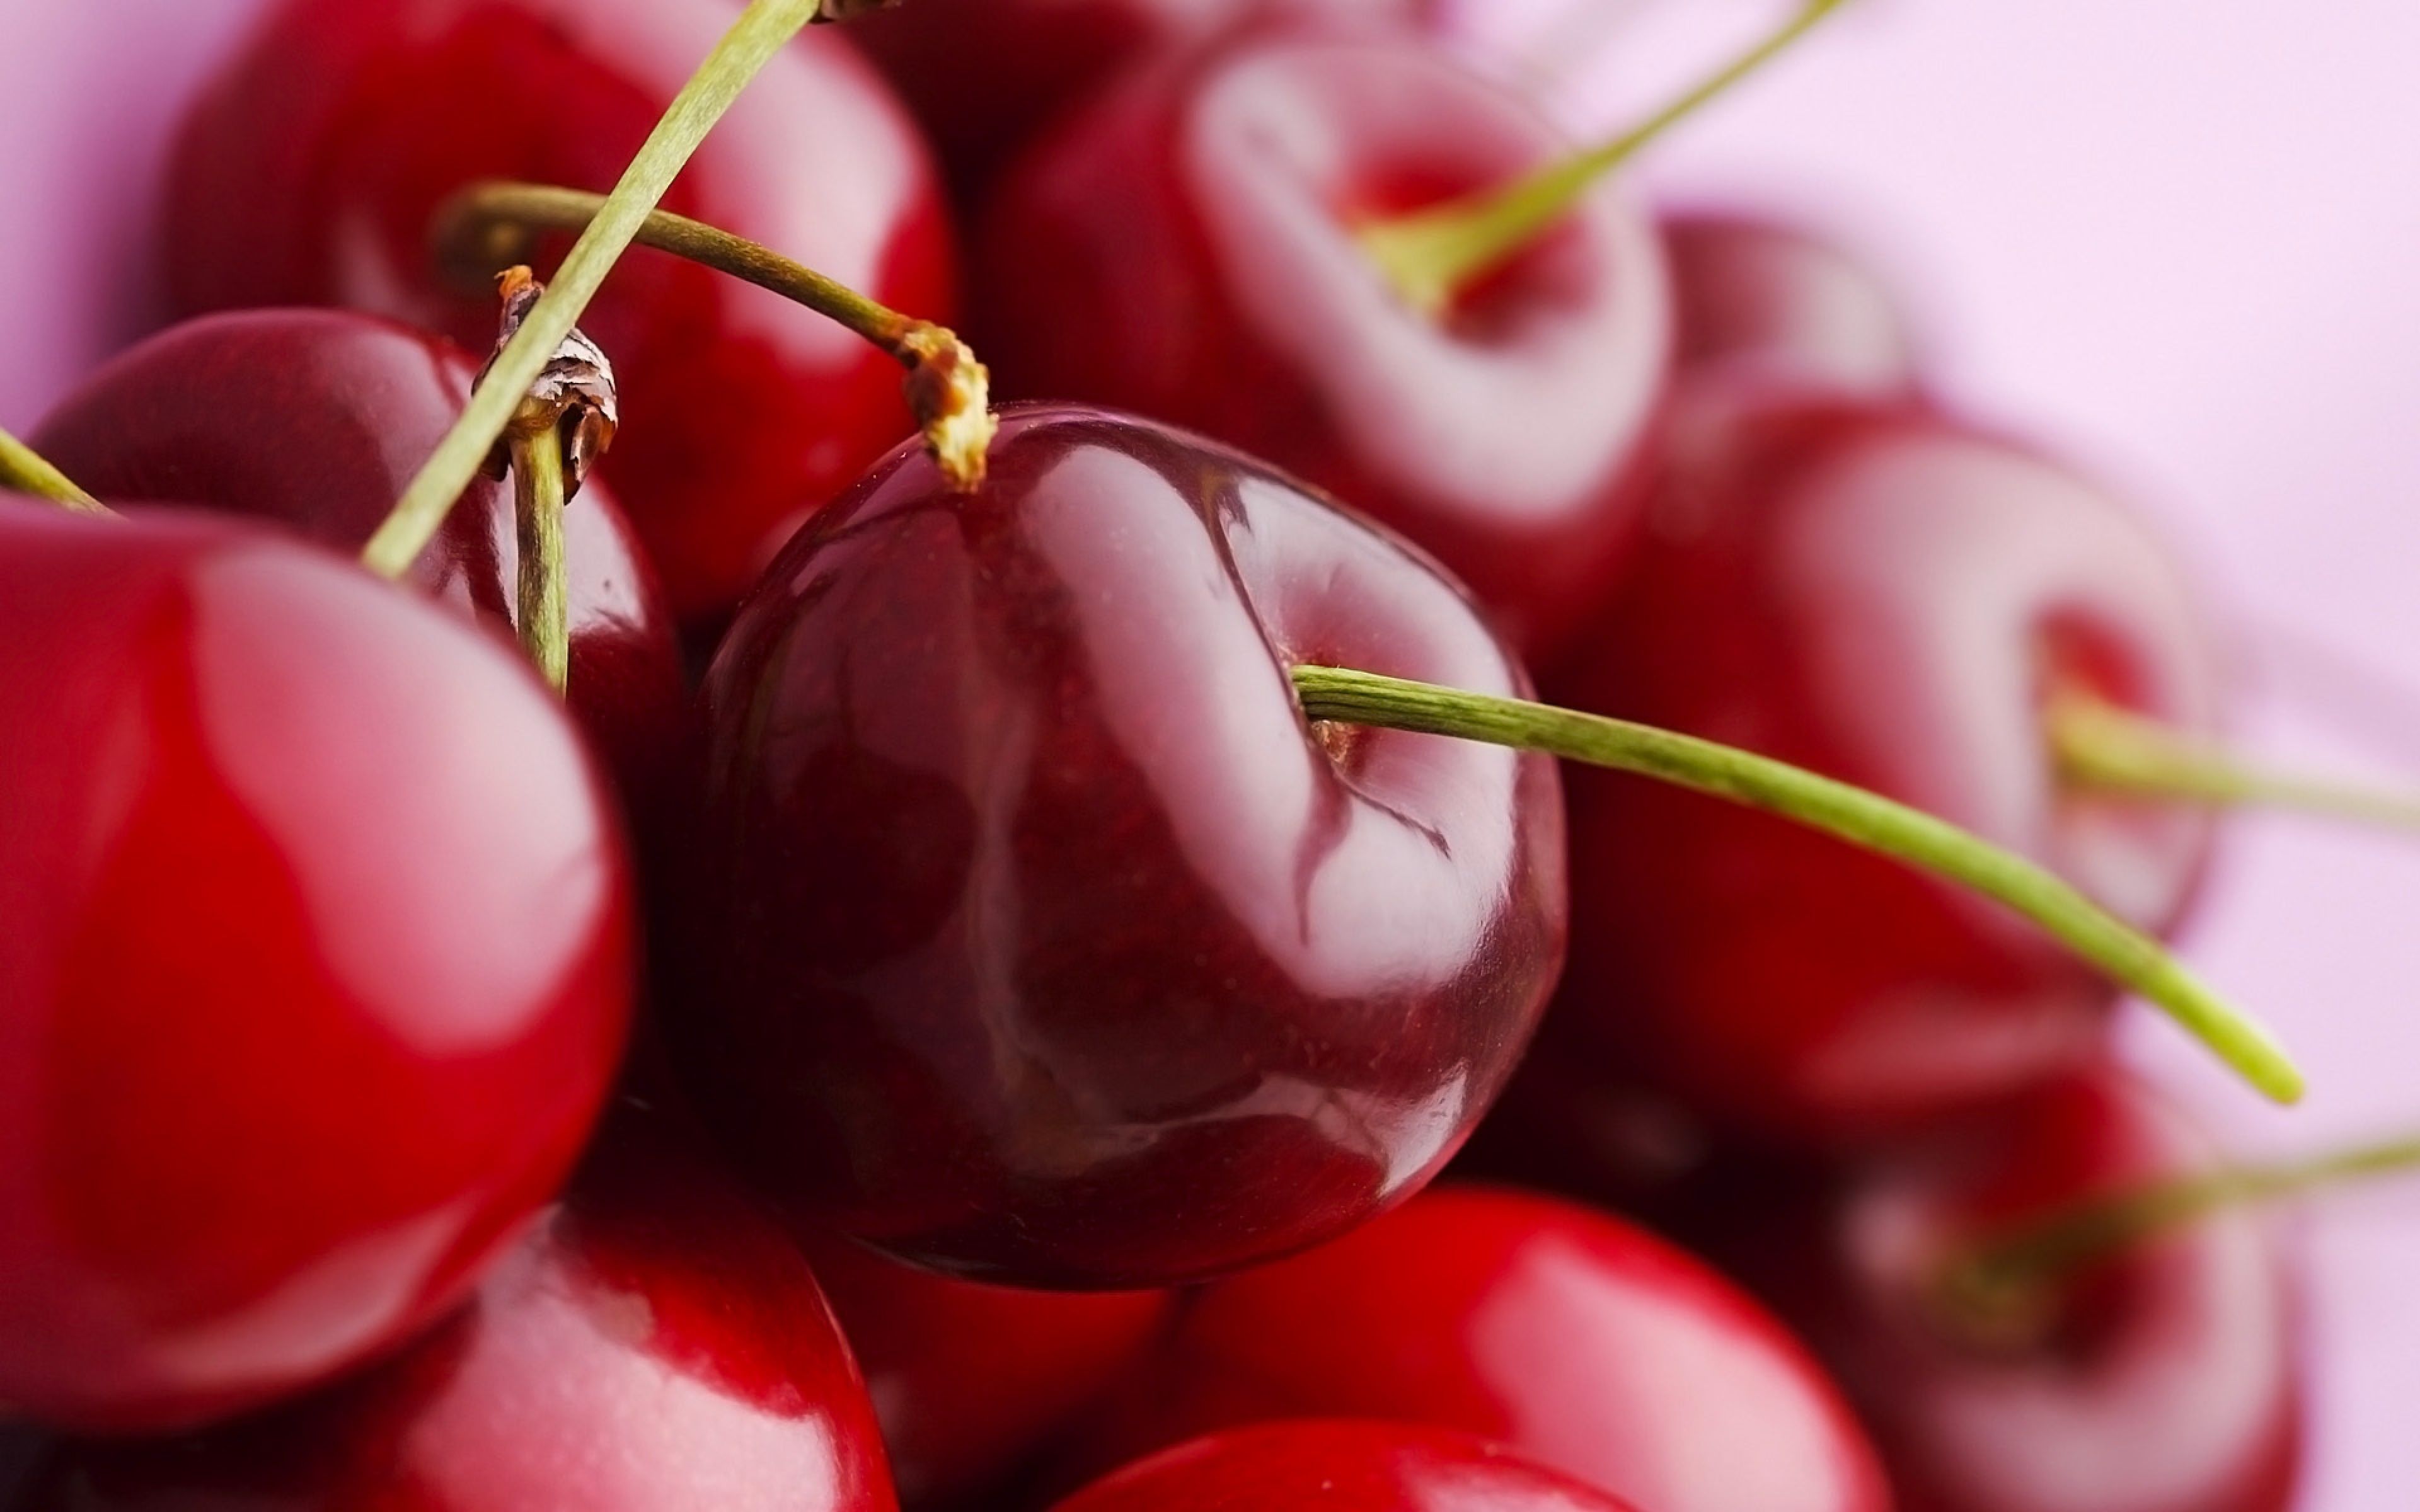 QUẢ ANH ĐÀO – CHERRY loại trái cây rất tốt cho sức khỏe - Tạp chí Golf và Cuộc Sống